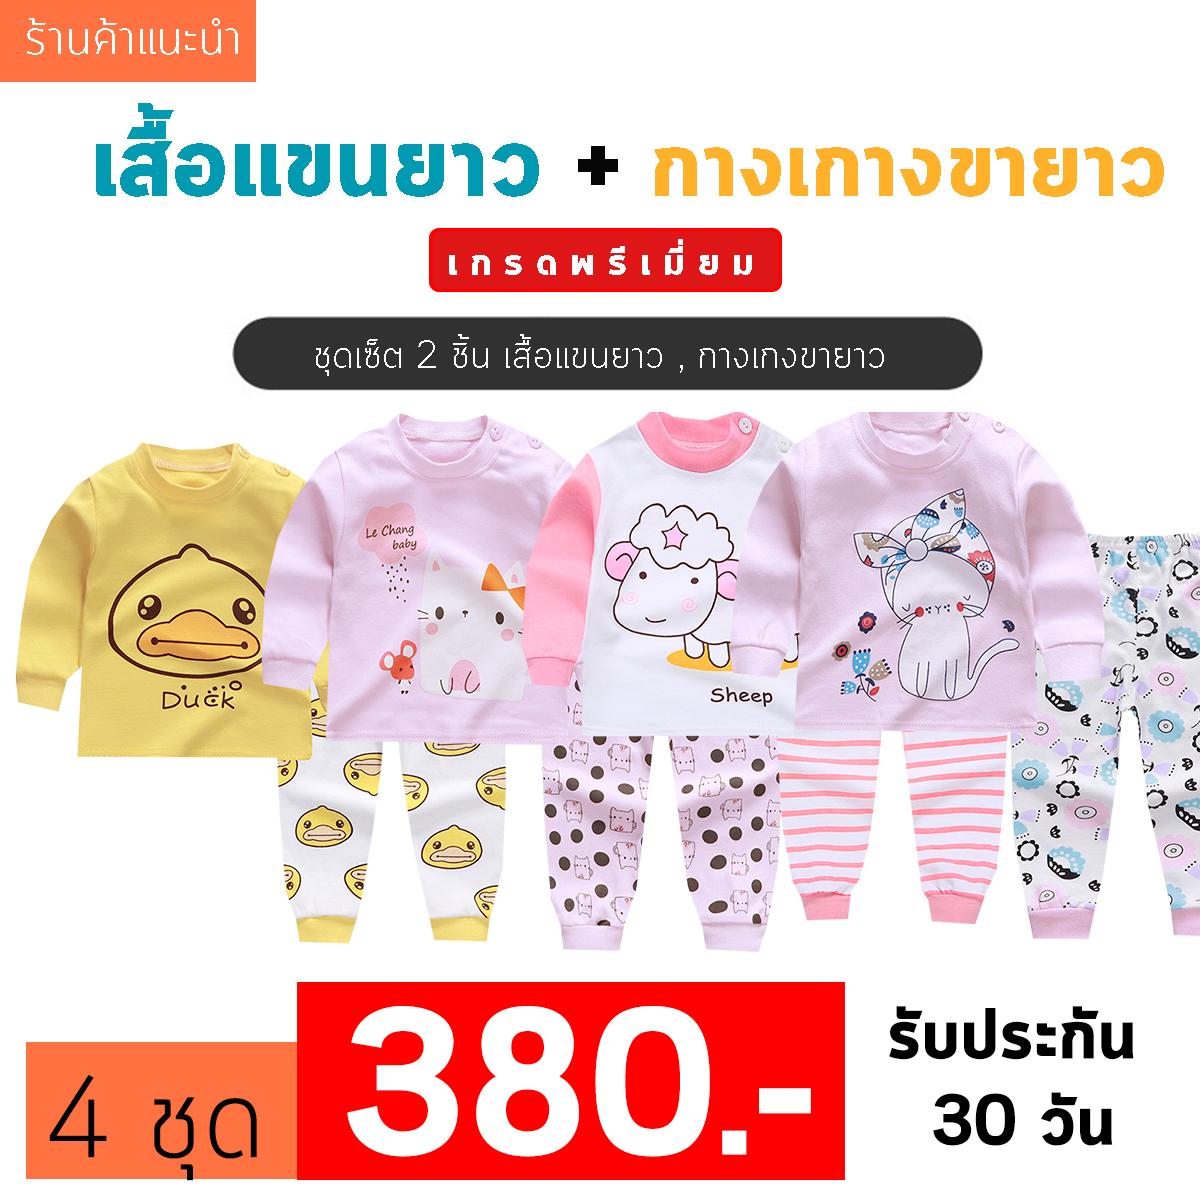 ❤️Baby Thailand  ชุดเสื้อผ้าเด็ก ชุดนอน เด็ก ชุดเสื้อผ้าเด็ก ชุดนอน เด็ก [เซ็ต2ชิ้น] [ เสื้อแขนยาว + กางเกงขายาว ]ใส่สบายเนื้อผ้า Cotton ราคาพิเศษ ไซส์ 80 -120cm/ 6เดือน-5ปี ชุดนอนเด็ก ผ้านิ่ม เนื้อผ้า